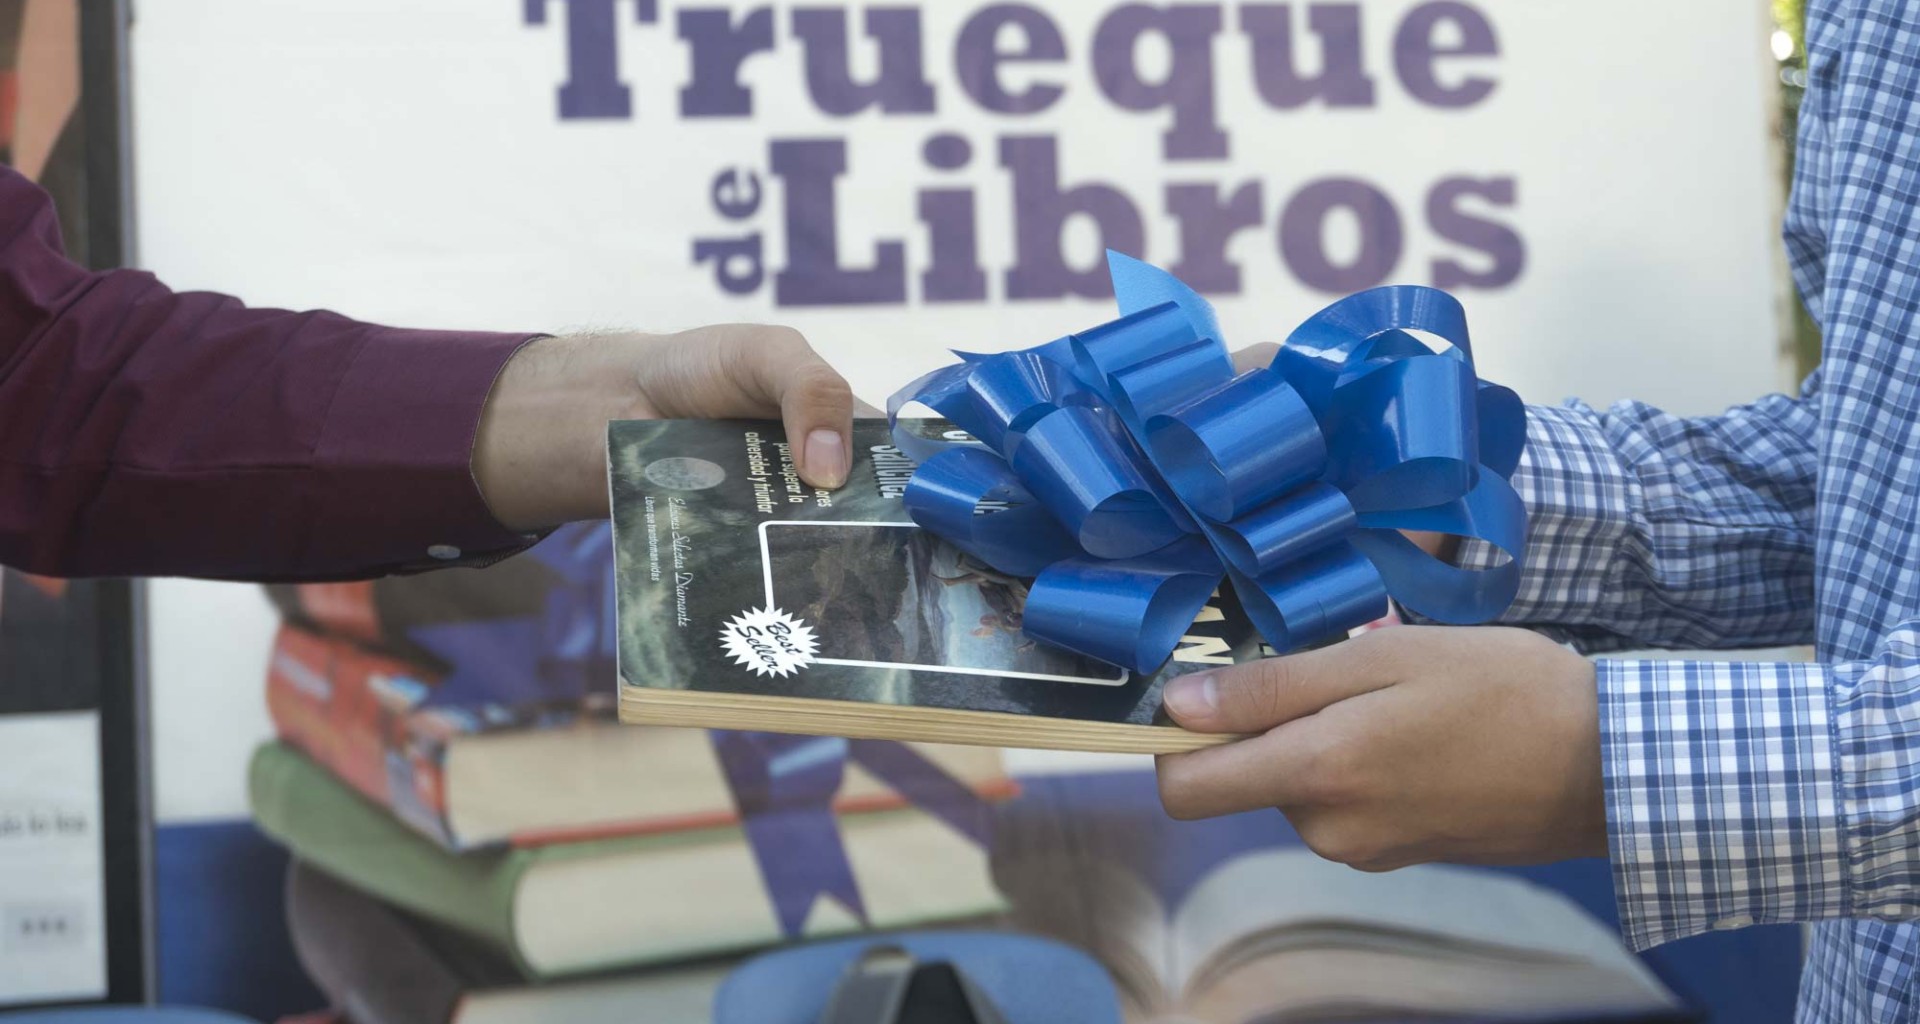 En el aniversario de la ciudad de Culiacán, se ha estado proponiendo desde los últimos años el fomentar la cultura a través de regalar un libro, un evento que intenta involucrar a todos los ciudadanos con el fin de difundir el habito de leer.